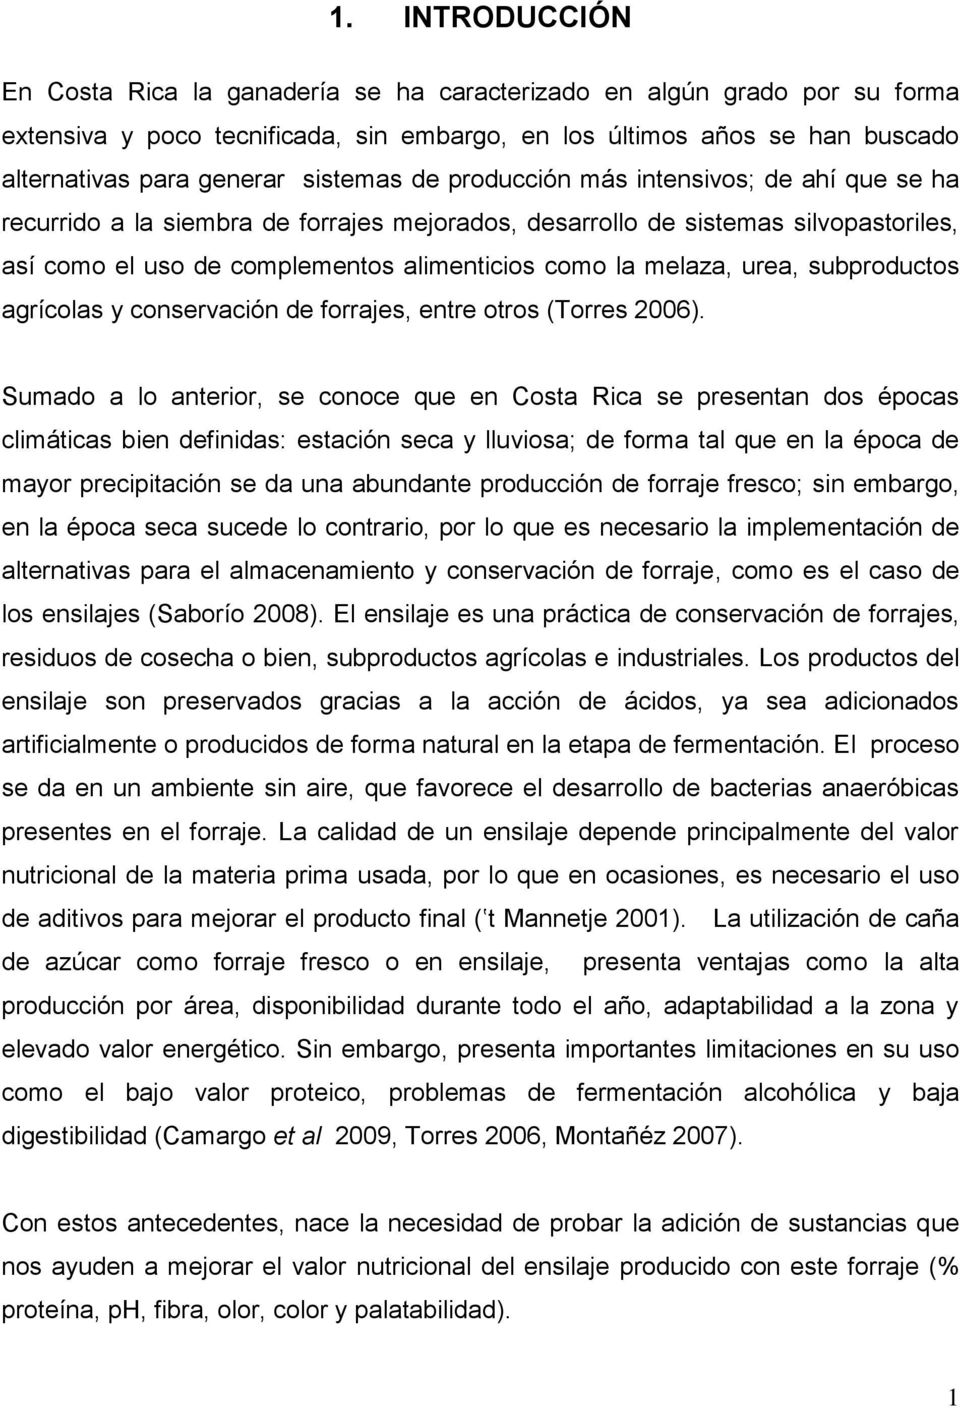 melaza, urea, subproductos agrícolas y conservación de forrajes, entre otros (Torres 2006).